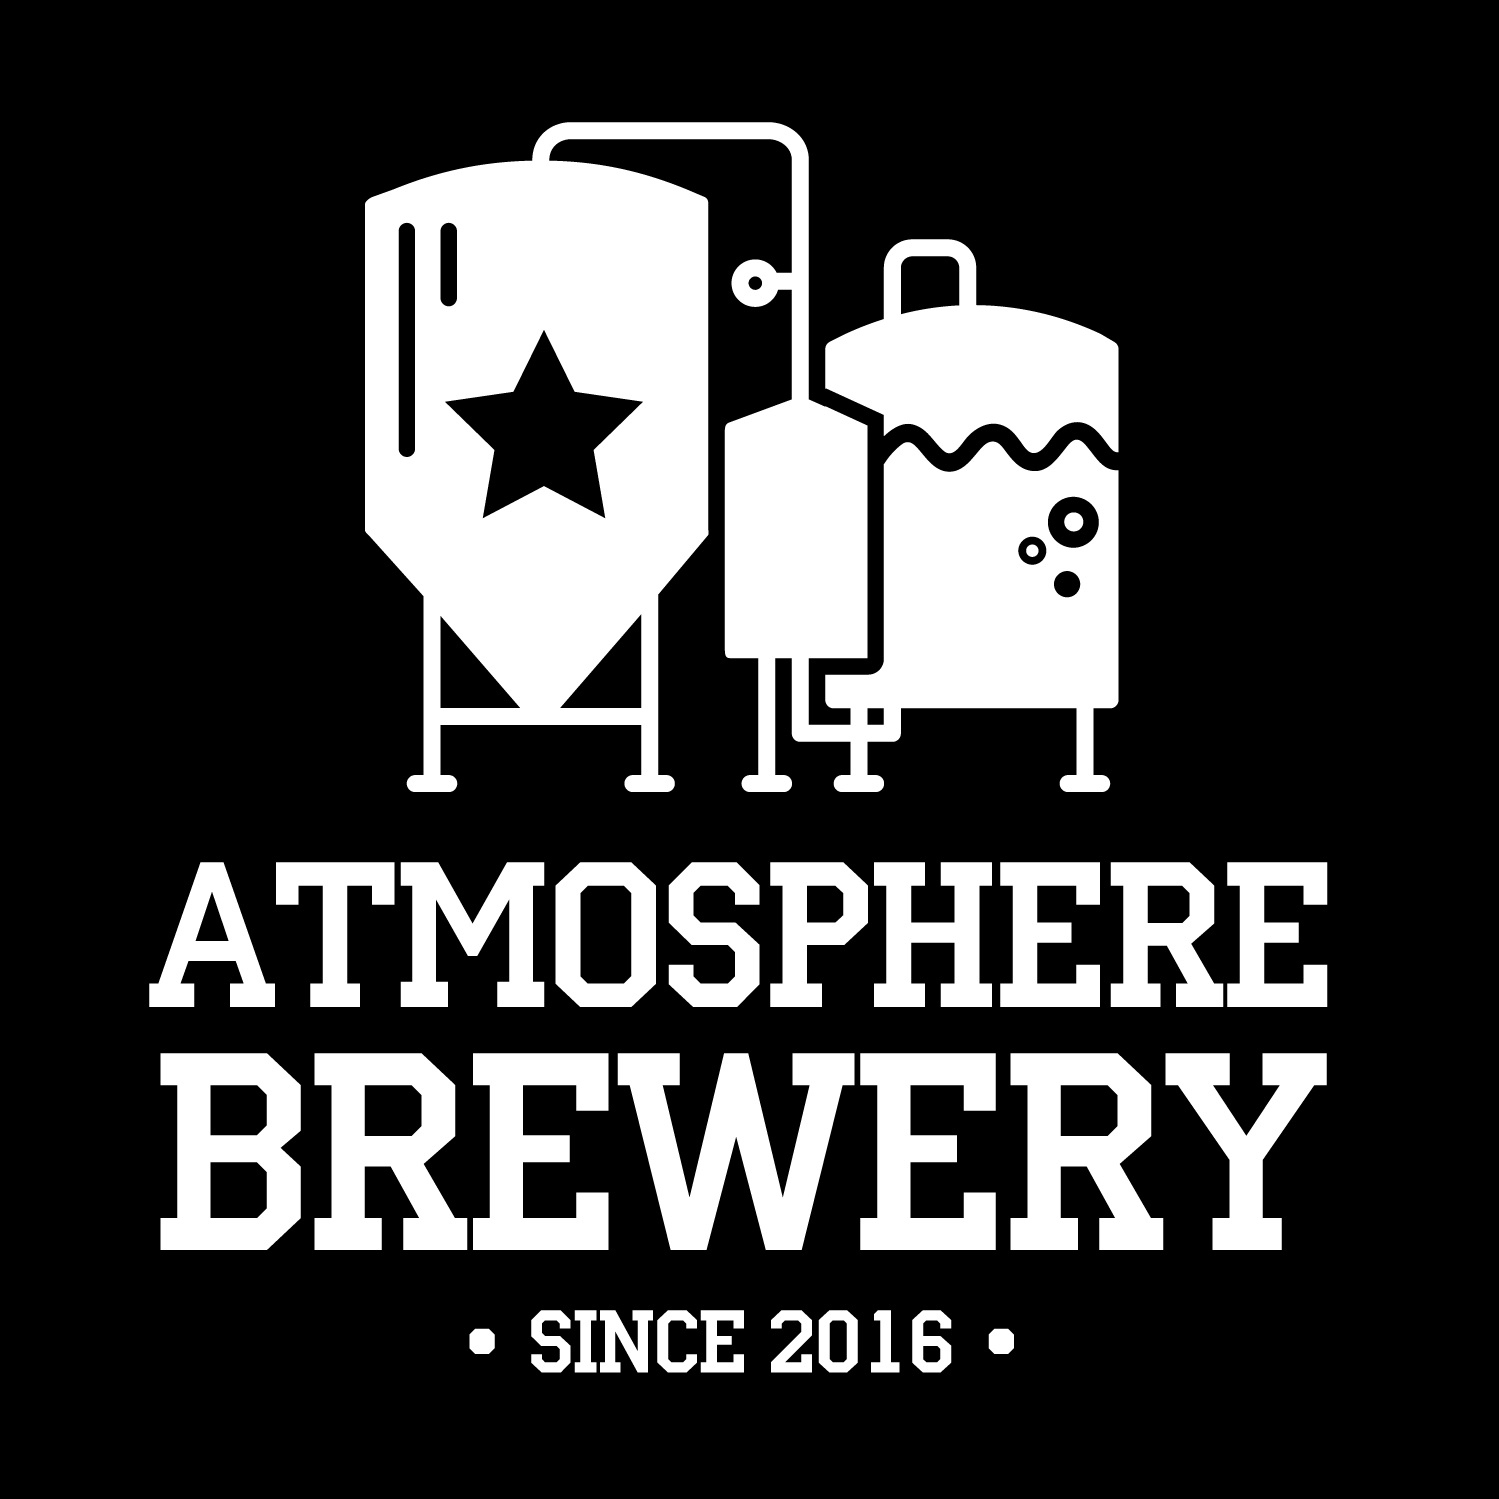 Atmosphere brewery